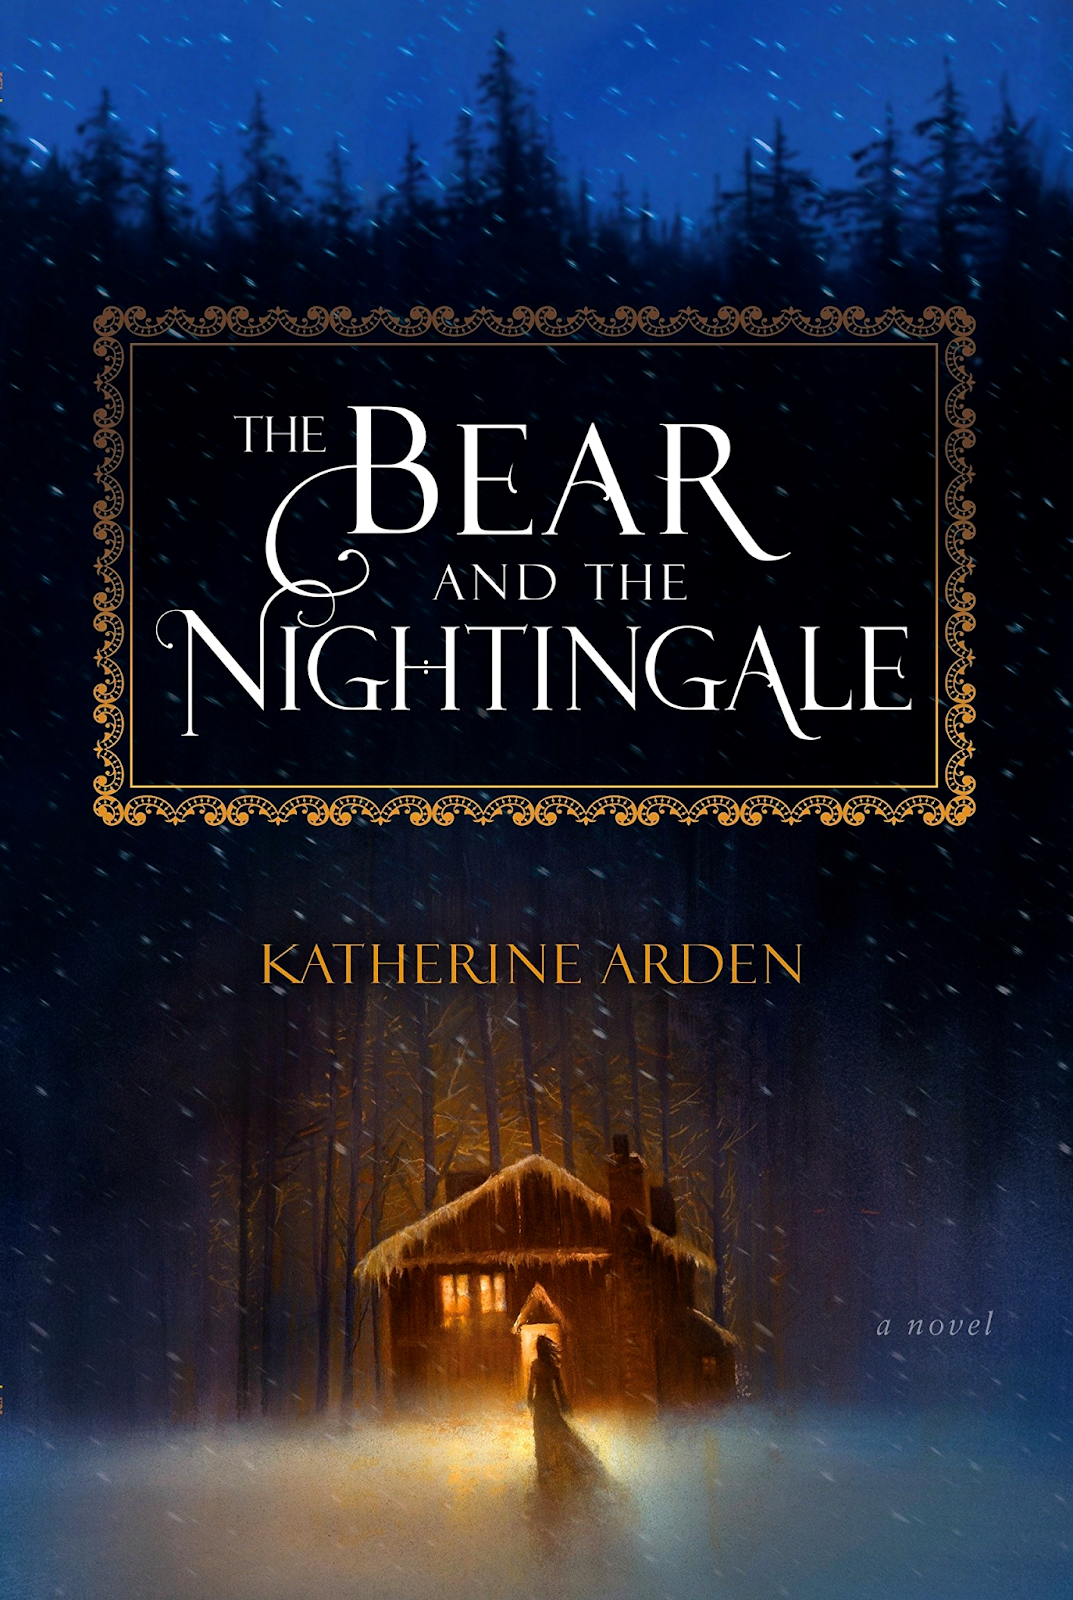 The Winternight Trilogy by Katherine Arden